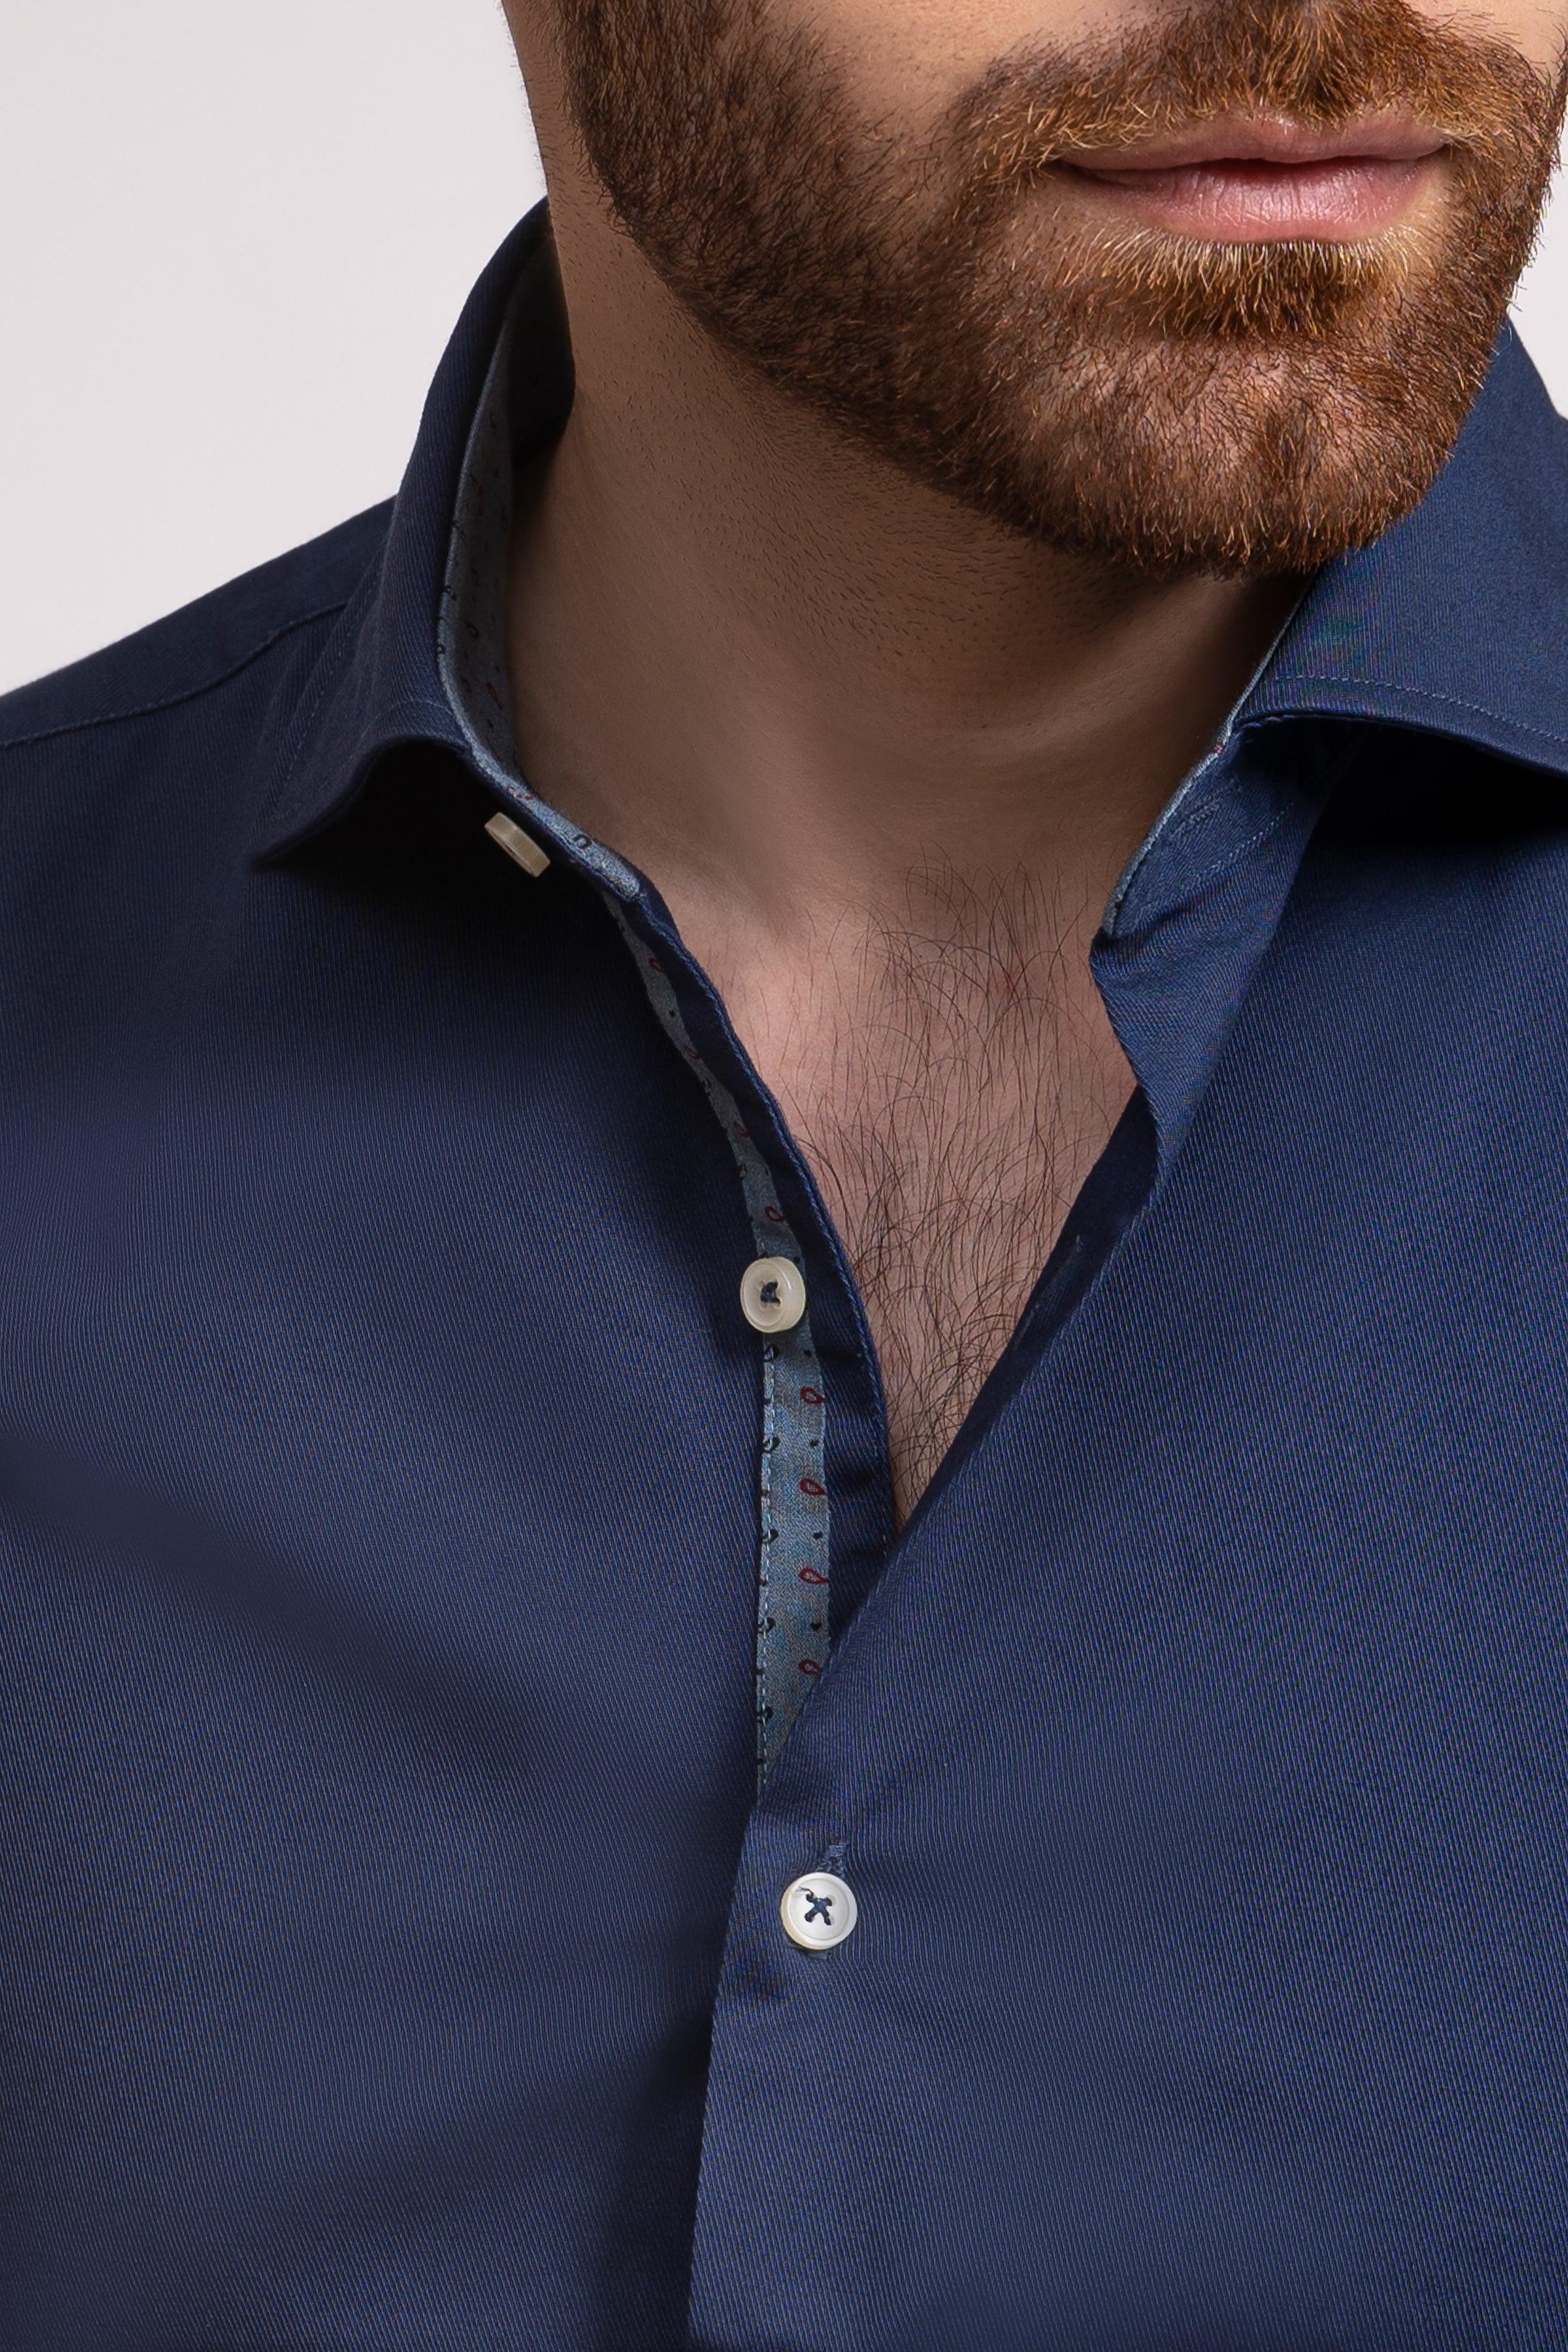 SEMI FORMAL SHIRT FRENCH COLLAR ROYAL BLUE at Charcoal Clothing